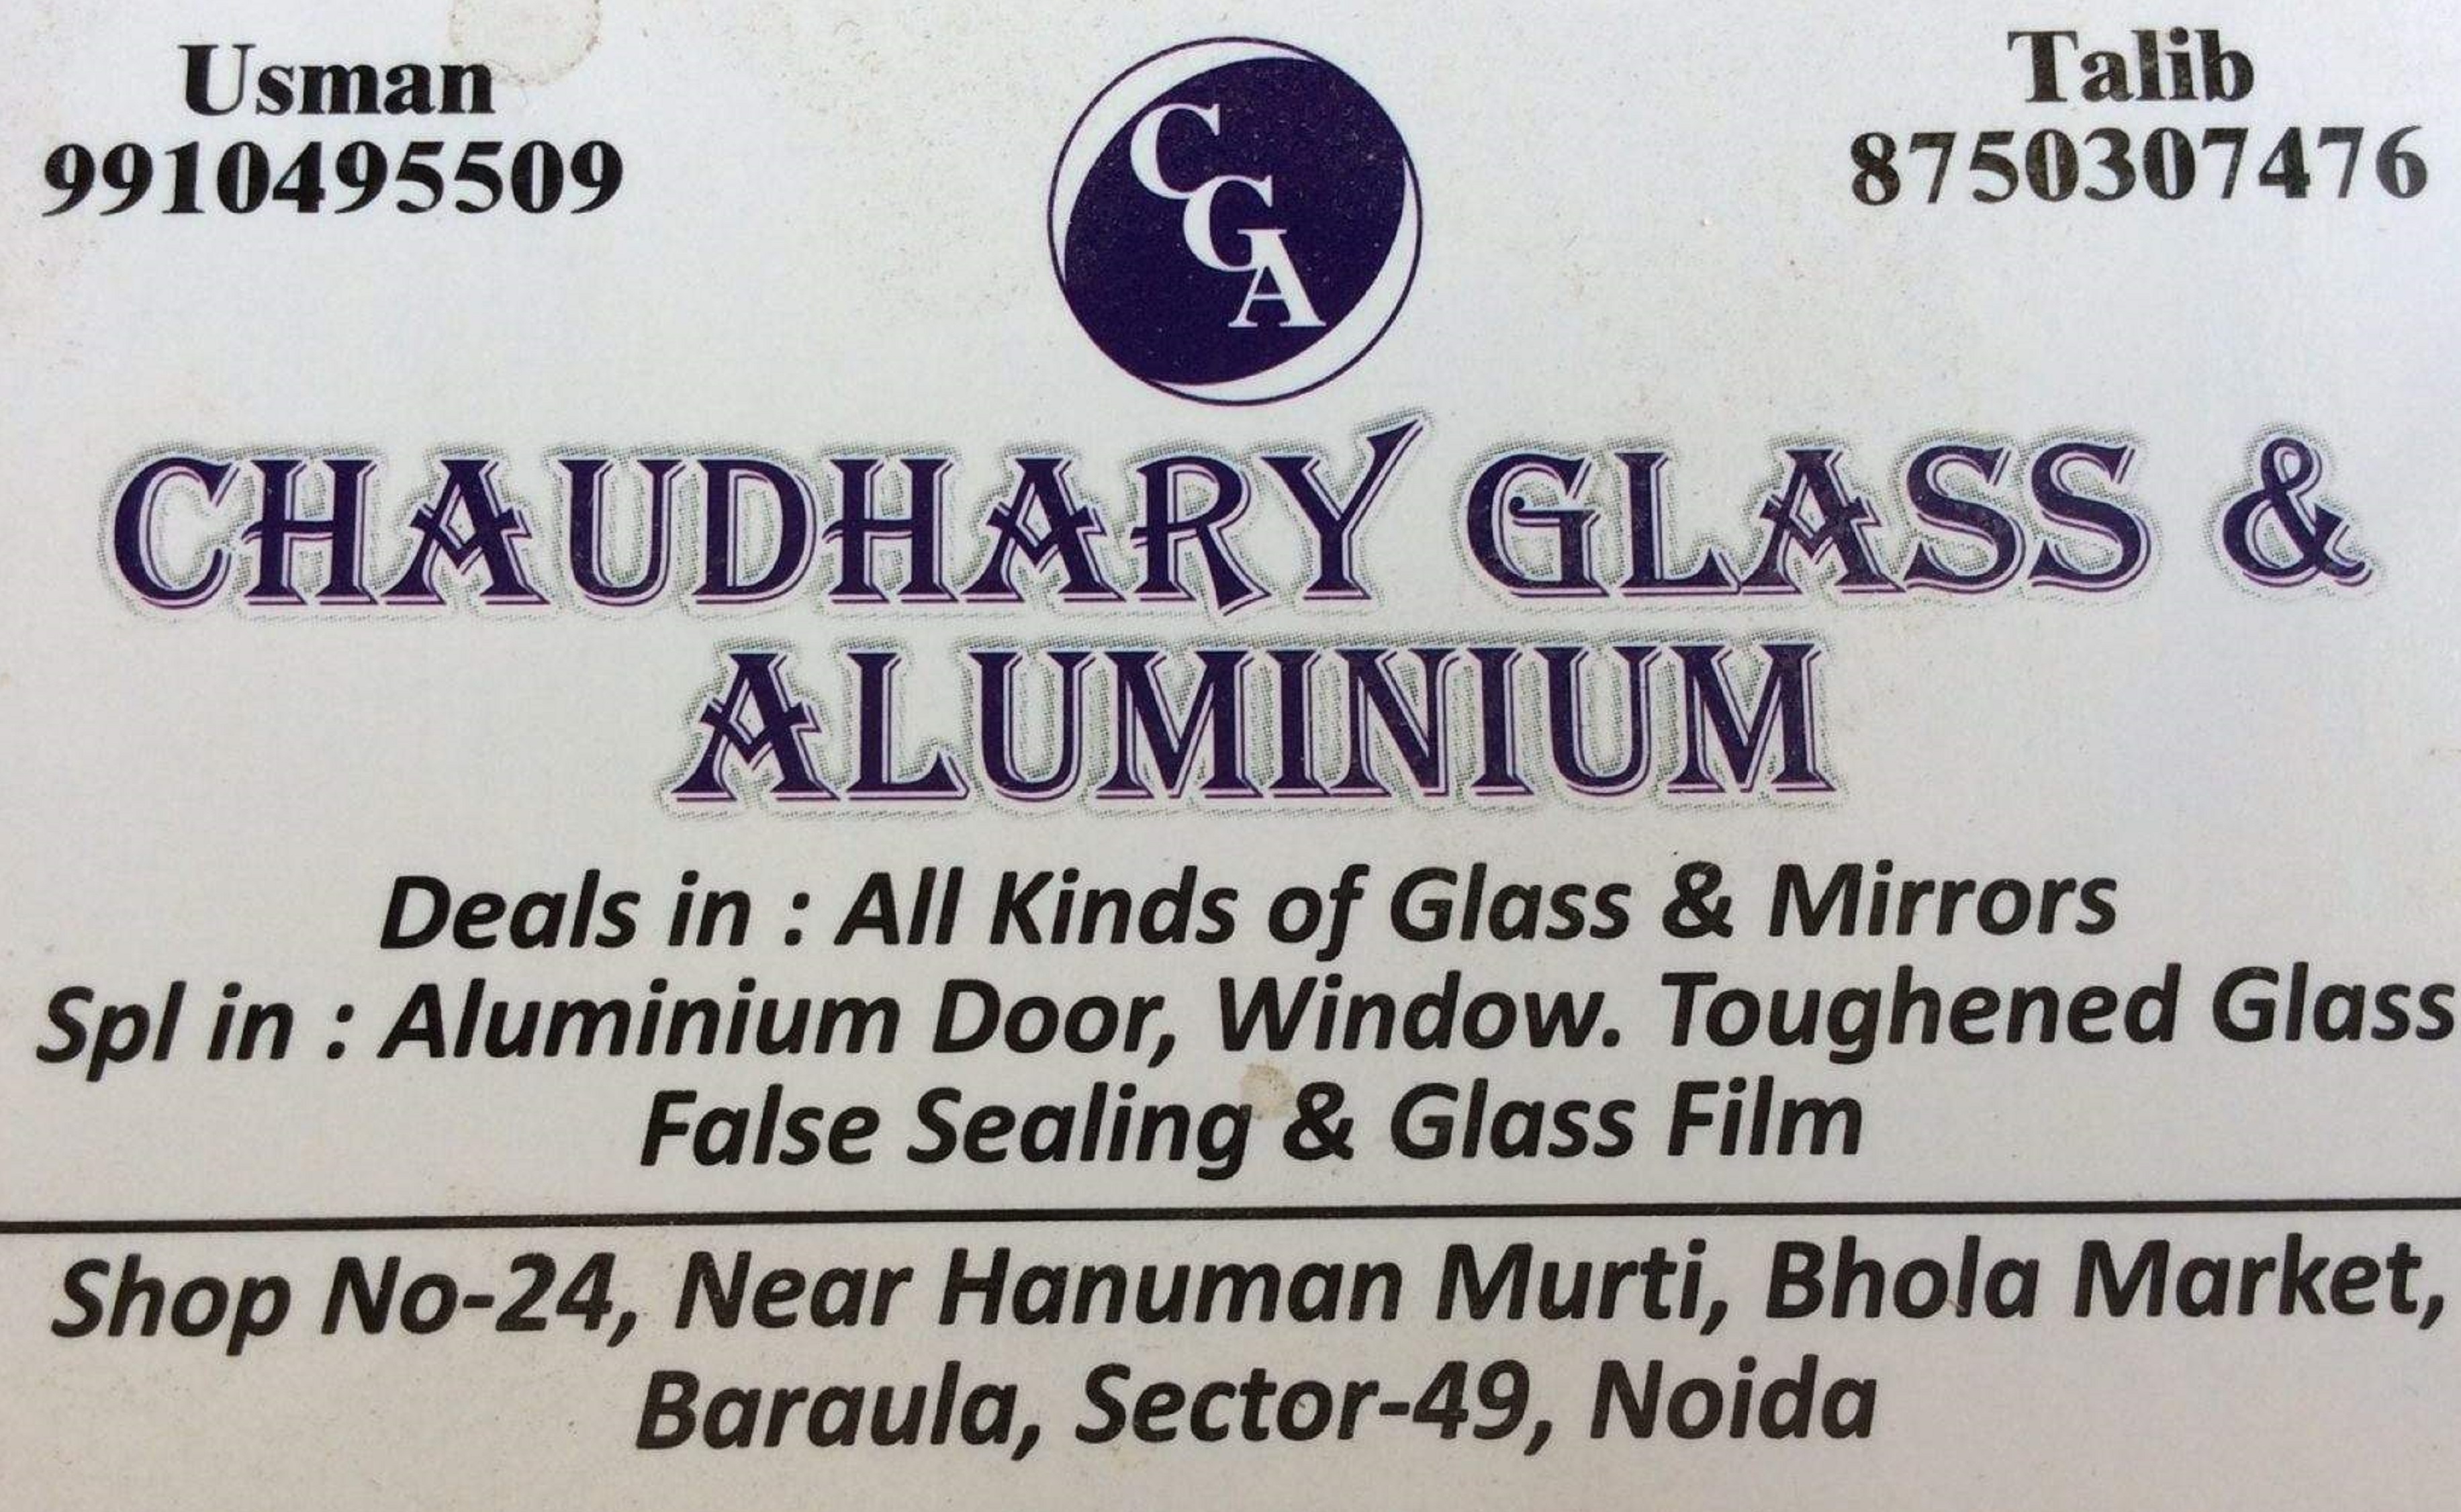 CHAUDHARY GLASS & ALUMINIUM